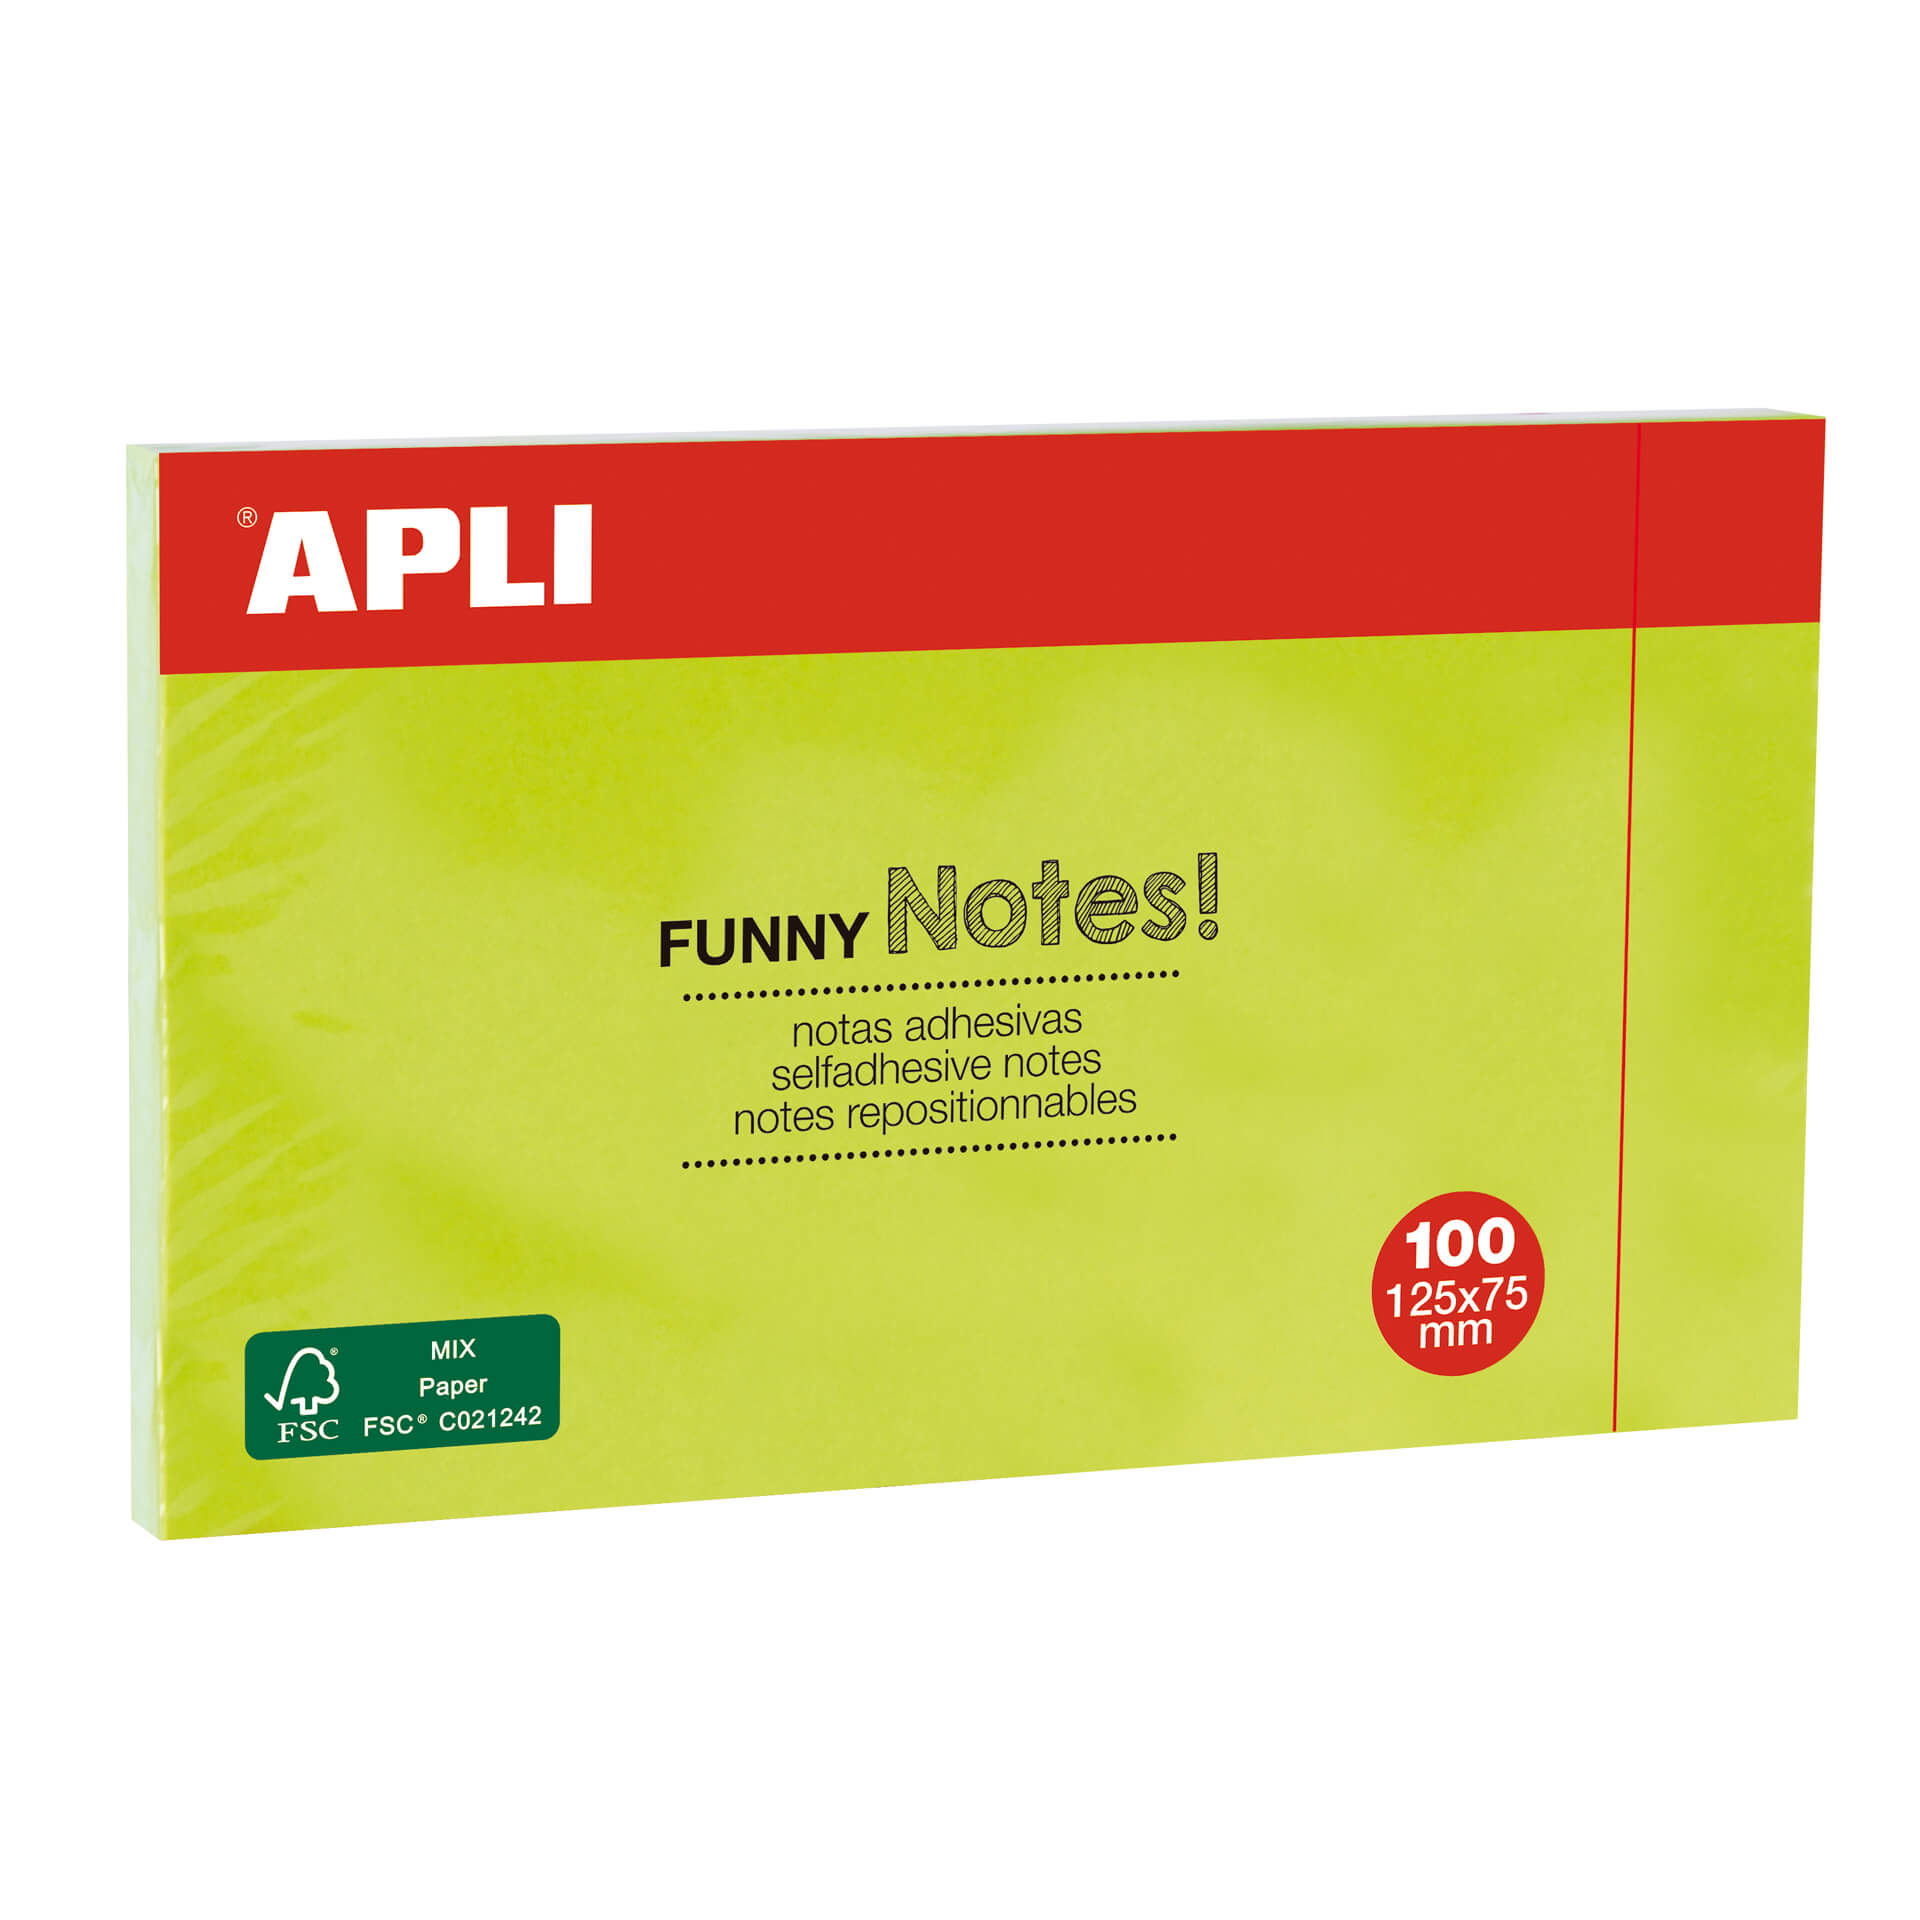 Apli Funny Sticky Notes 125x75mm - Bloc de 100 feuilles - Adhésif de qualité - Facile à décoller - Couleur vert fluo